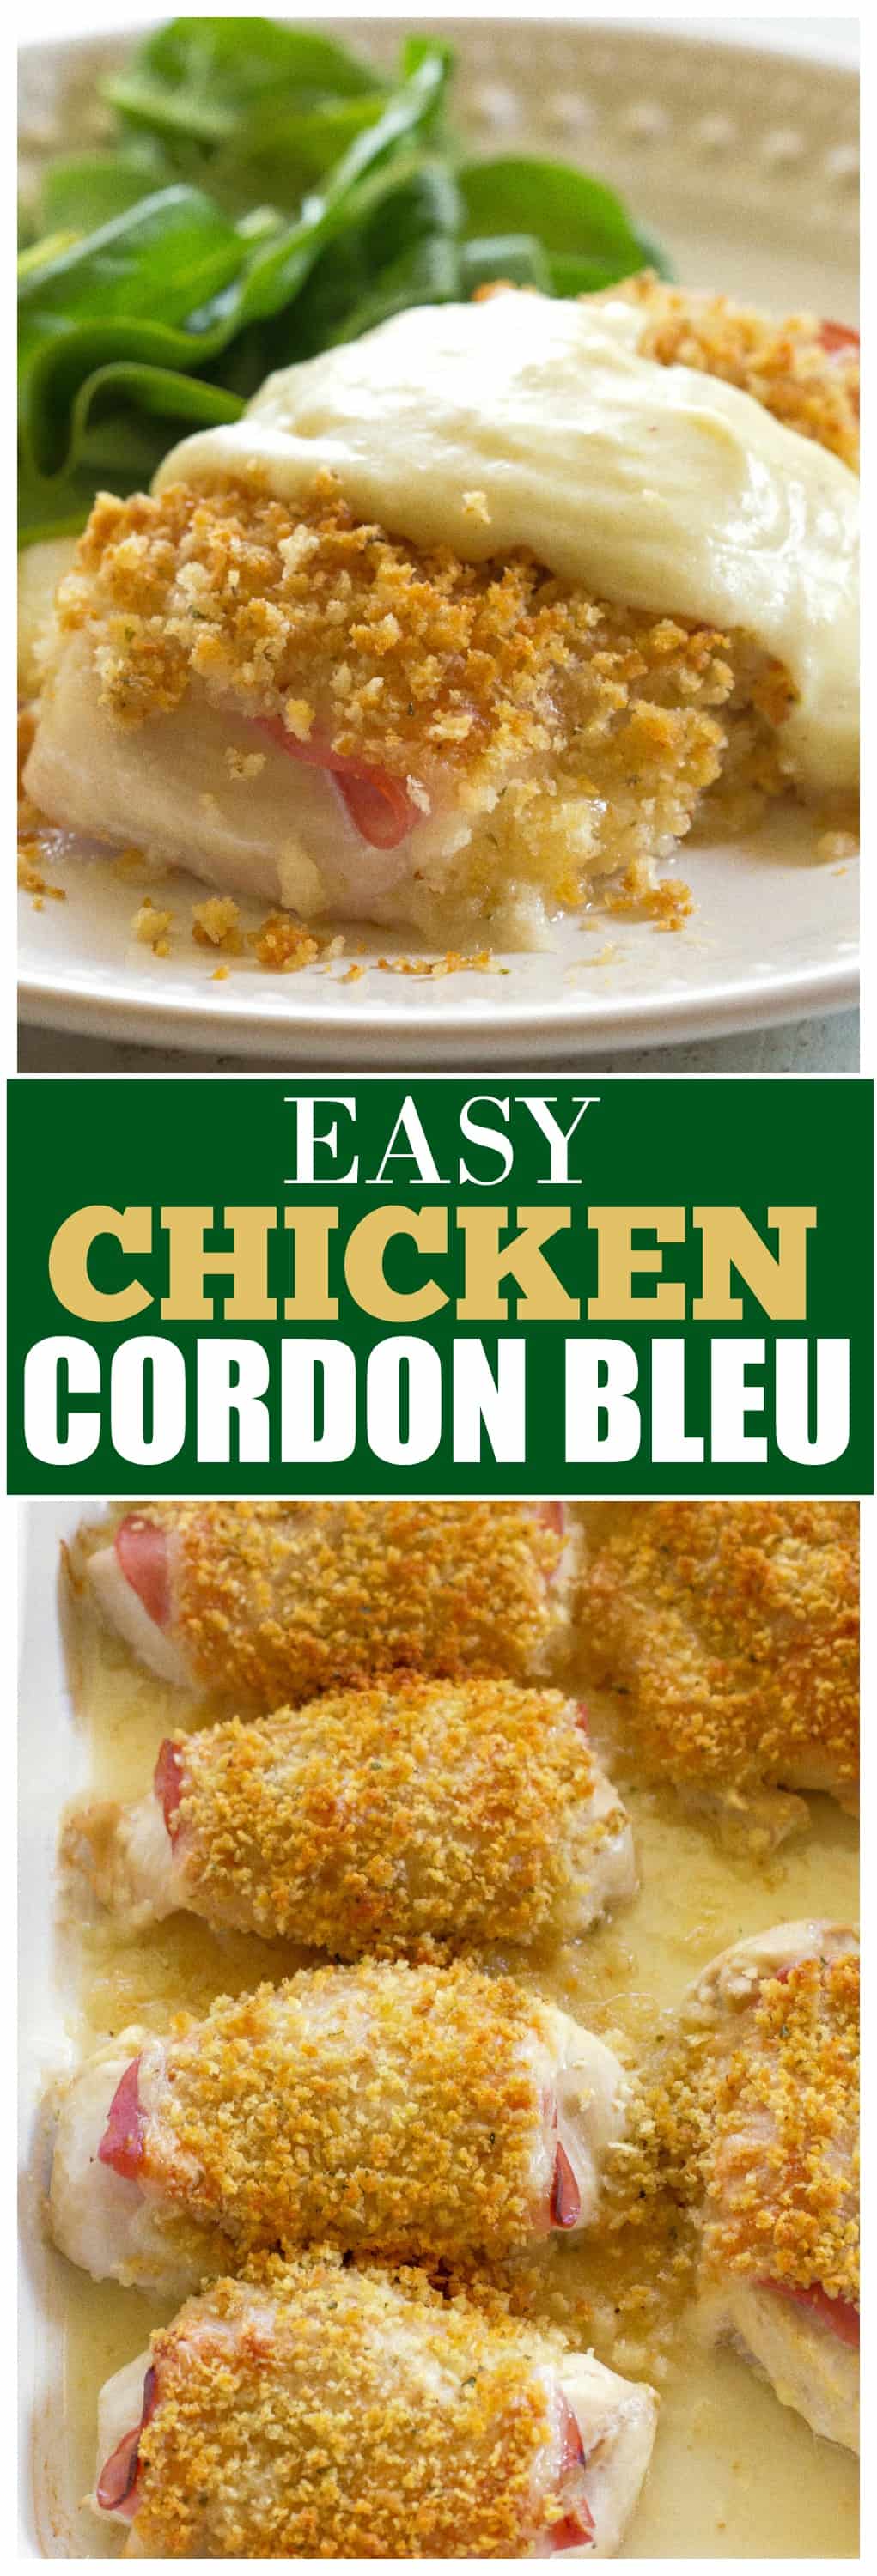 Chicken Cordon Bleu Recipe - The Girl Who Ate Everything